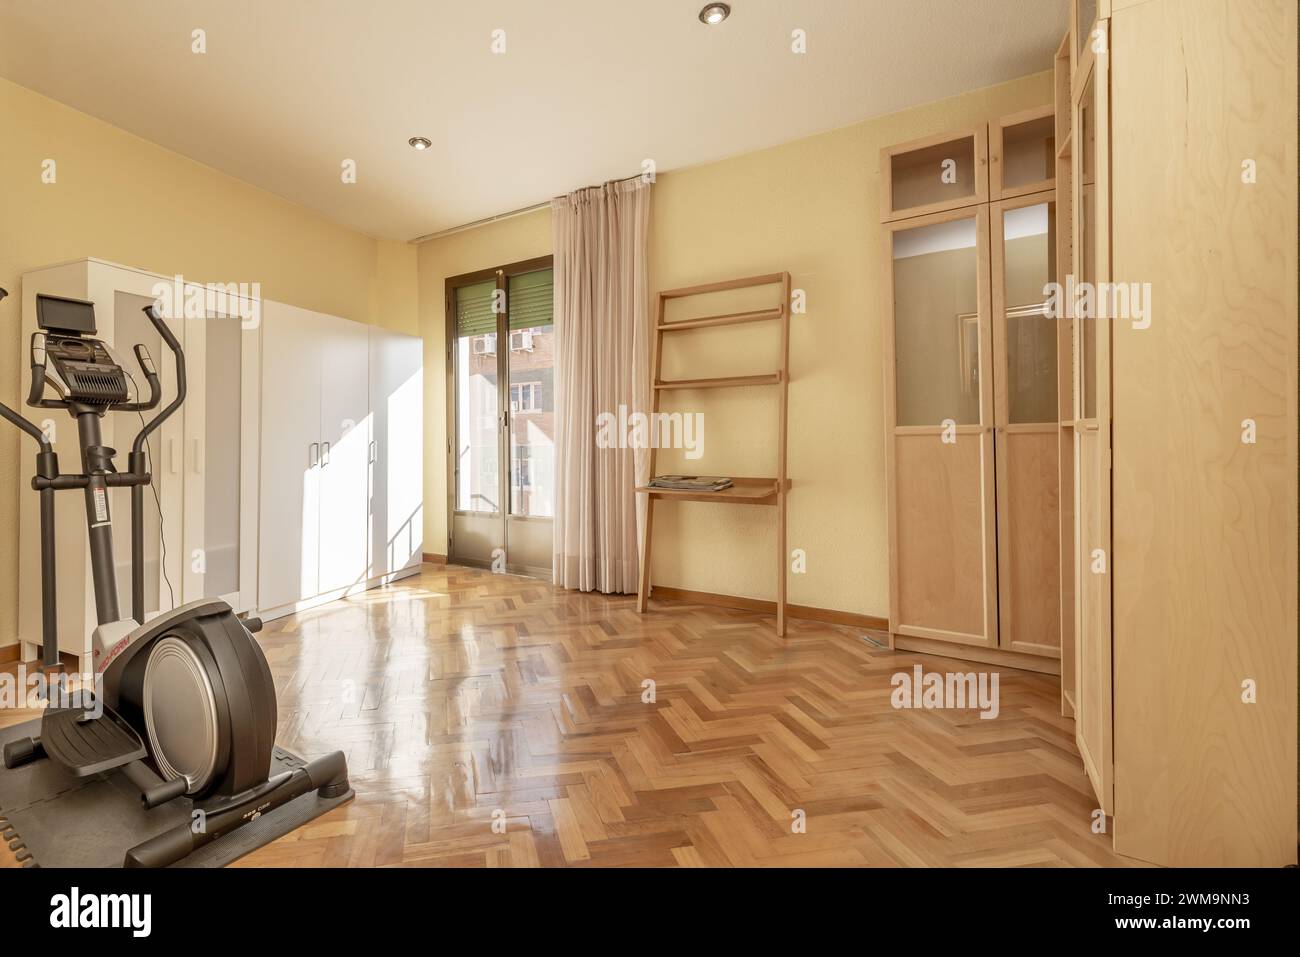 Zimmer mit ein paar Schränken an den Wänden, glänzend lackiertem Parkettboden und einem einsamen Trainingsgerät Stockfoto